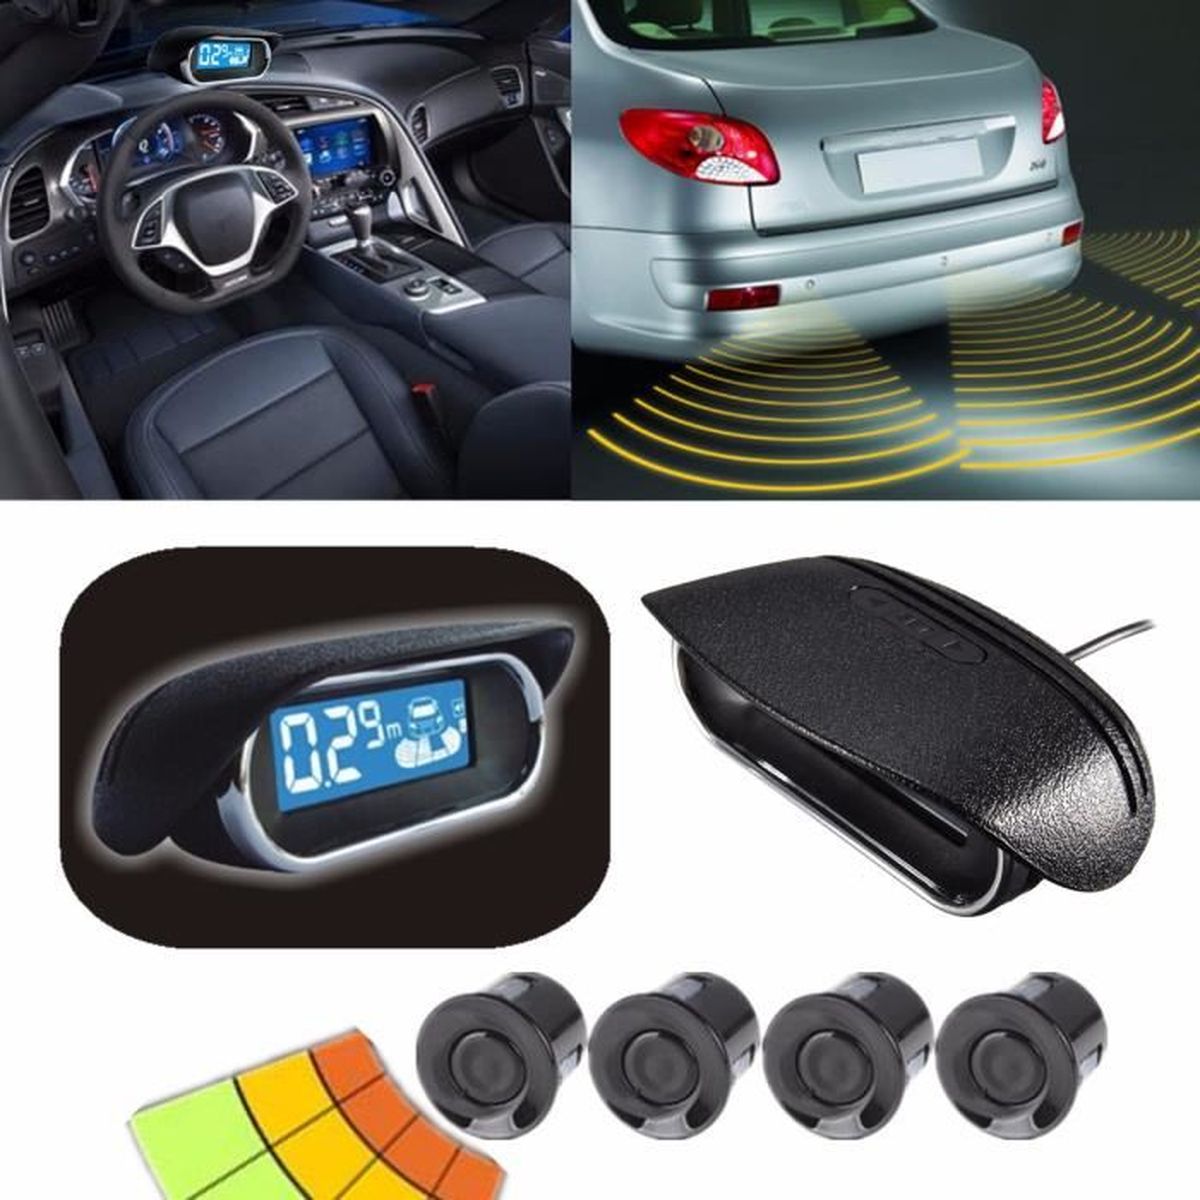 Обзор парктроников. Парковочный радар car parking sensor. Парктроник (parking sensor). Парктроник x80.